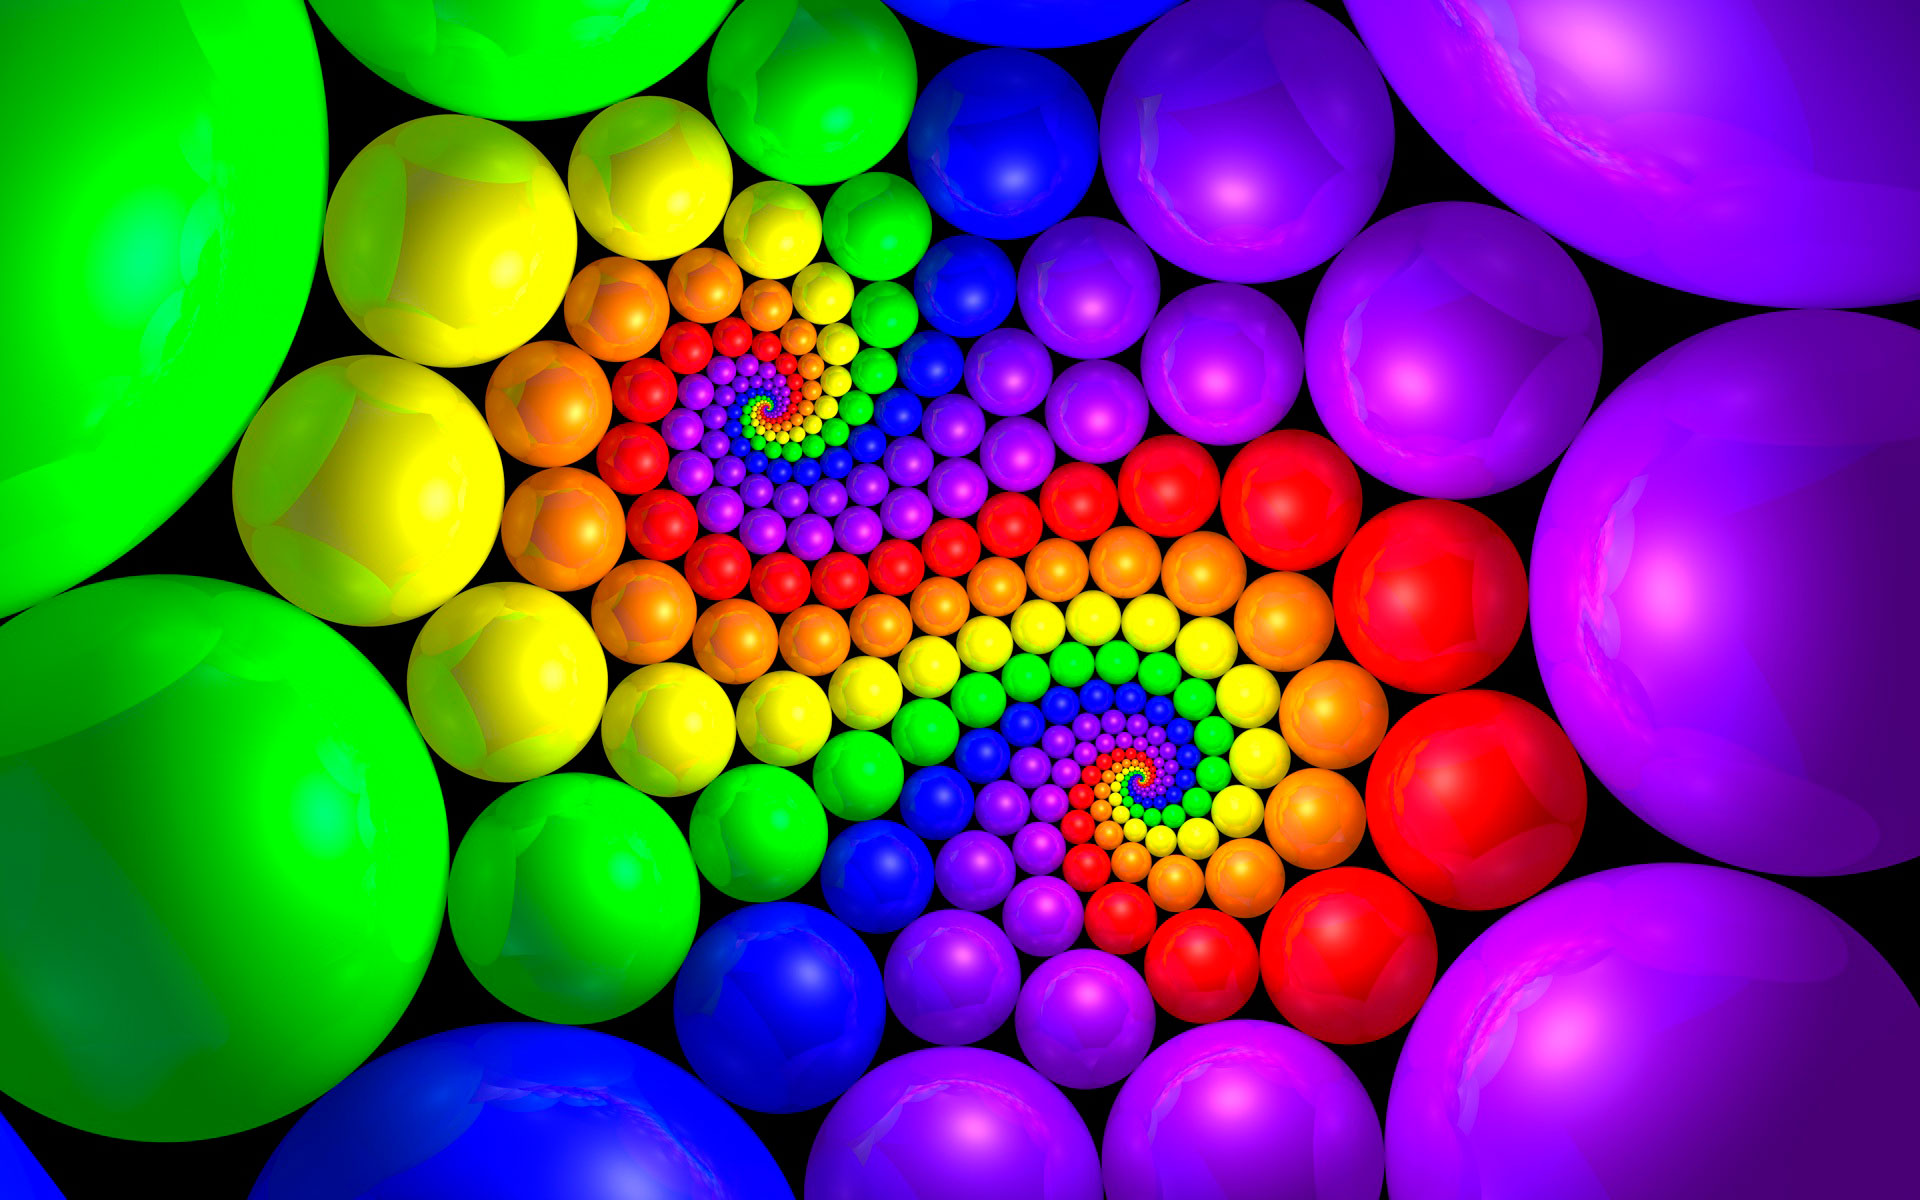 абстракция, разноцветные шары, орнамент из шаров, красивые обои на ваш рабочий стол, abstraction, colorful balls, ornament of balls, beautiful wallpaper on your desktop